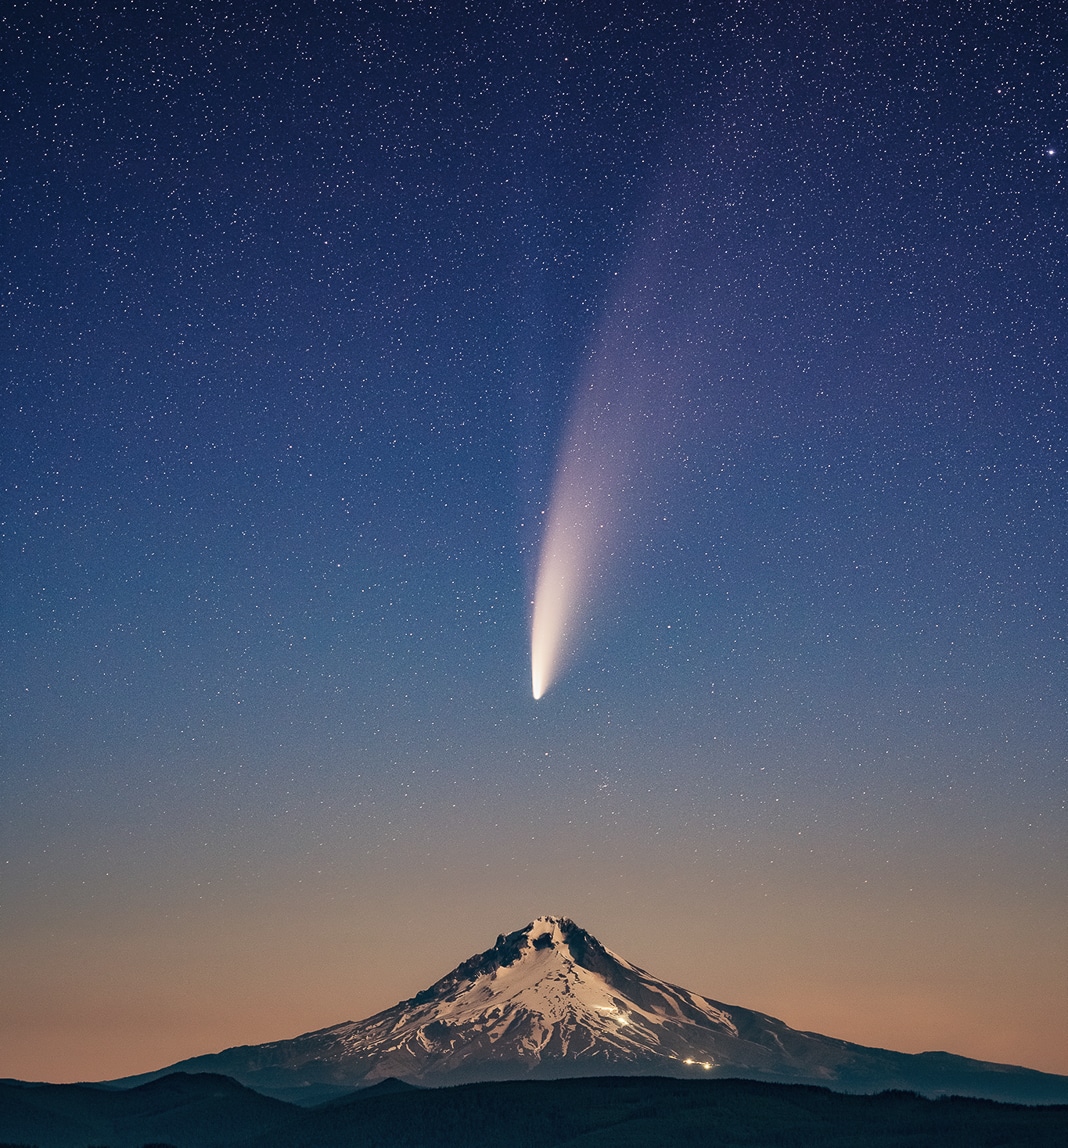 Mt Hood and Comet NEOWISE. © 2020 Kirk D. Keyes